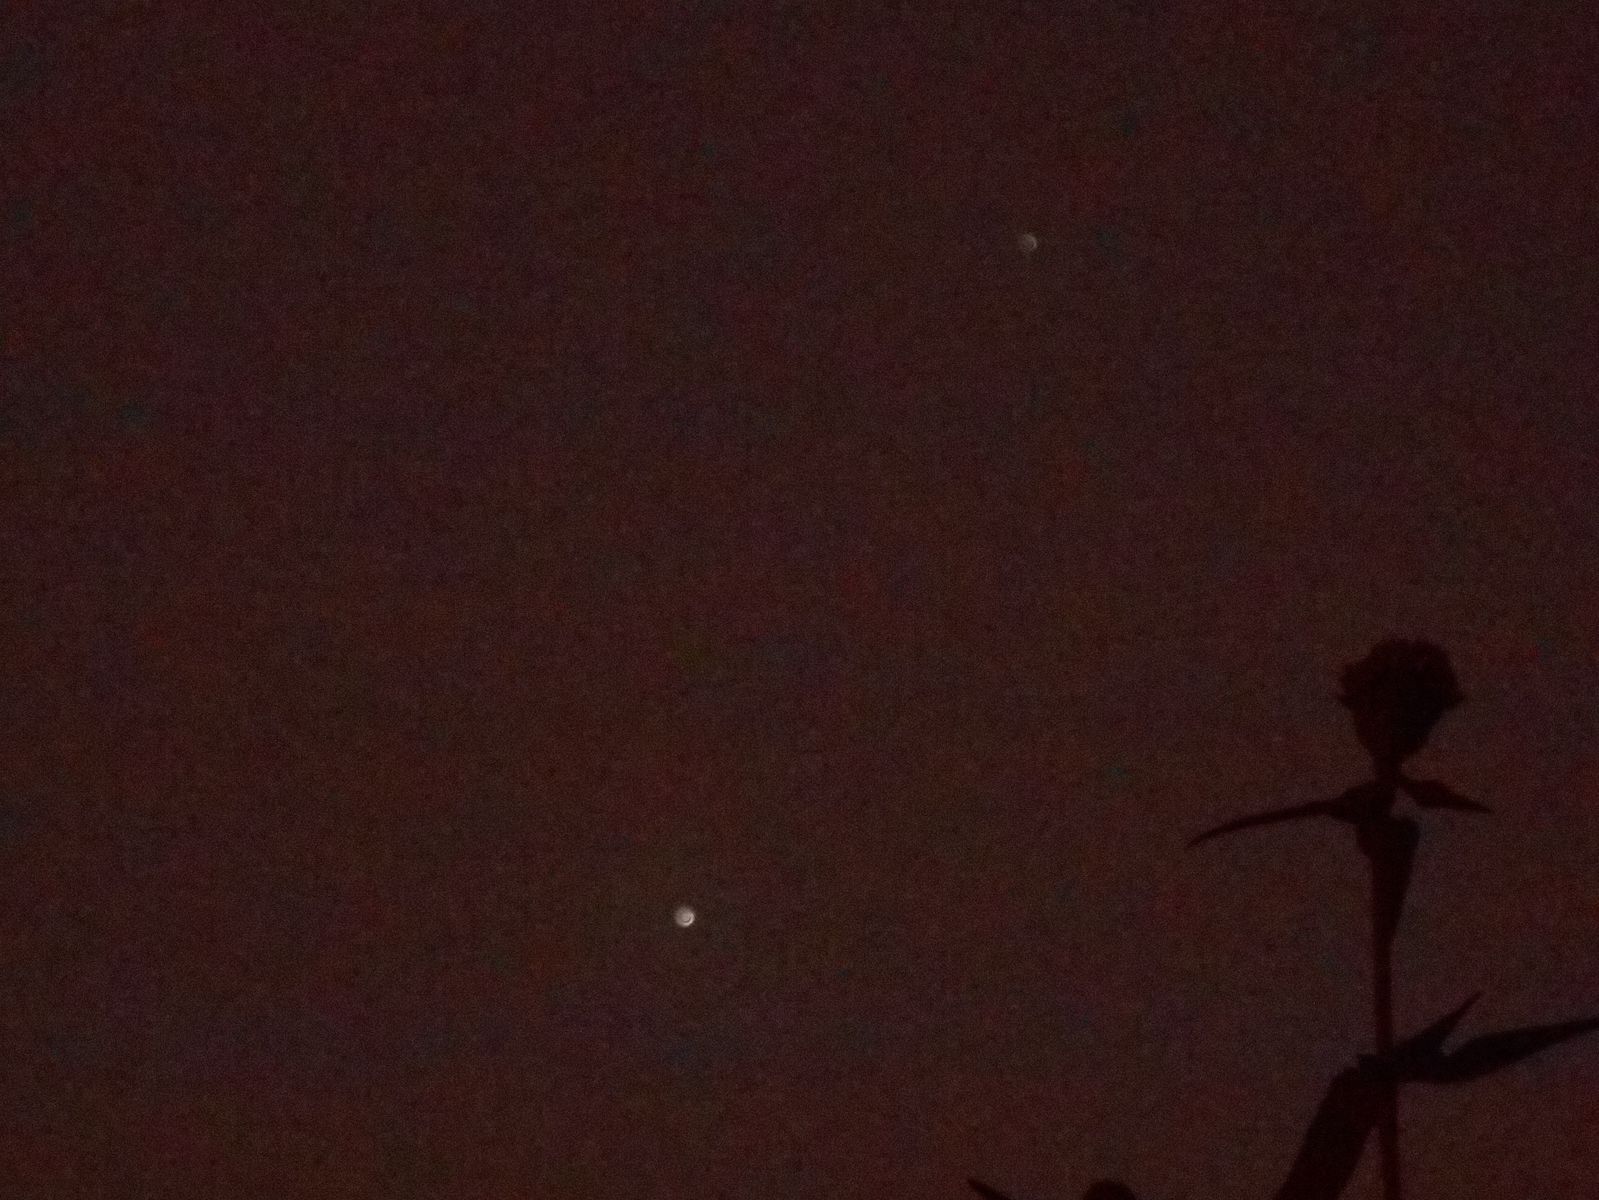 Venus and Jupiter November 3rd ,defocused for 3D effect